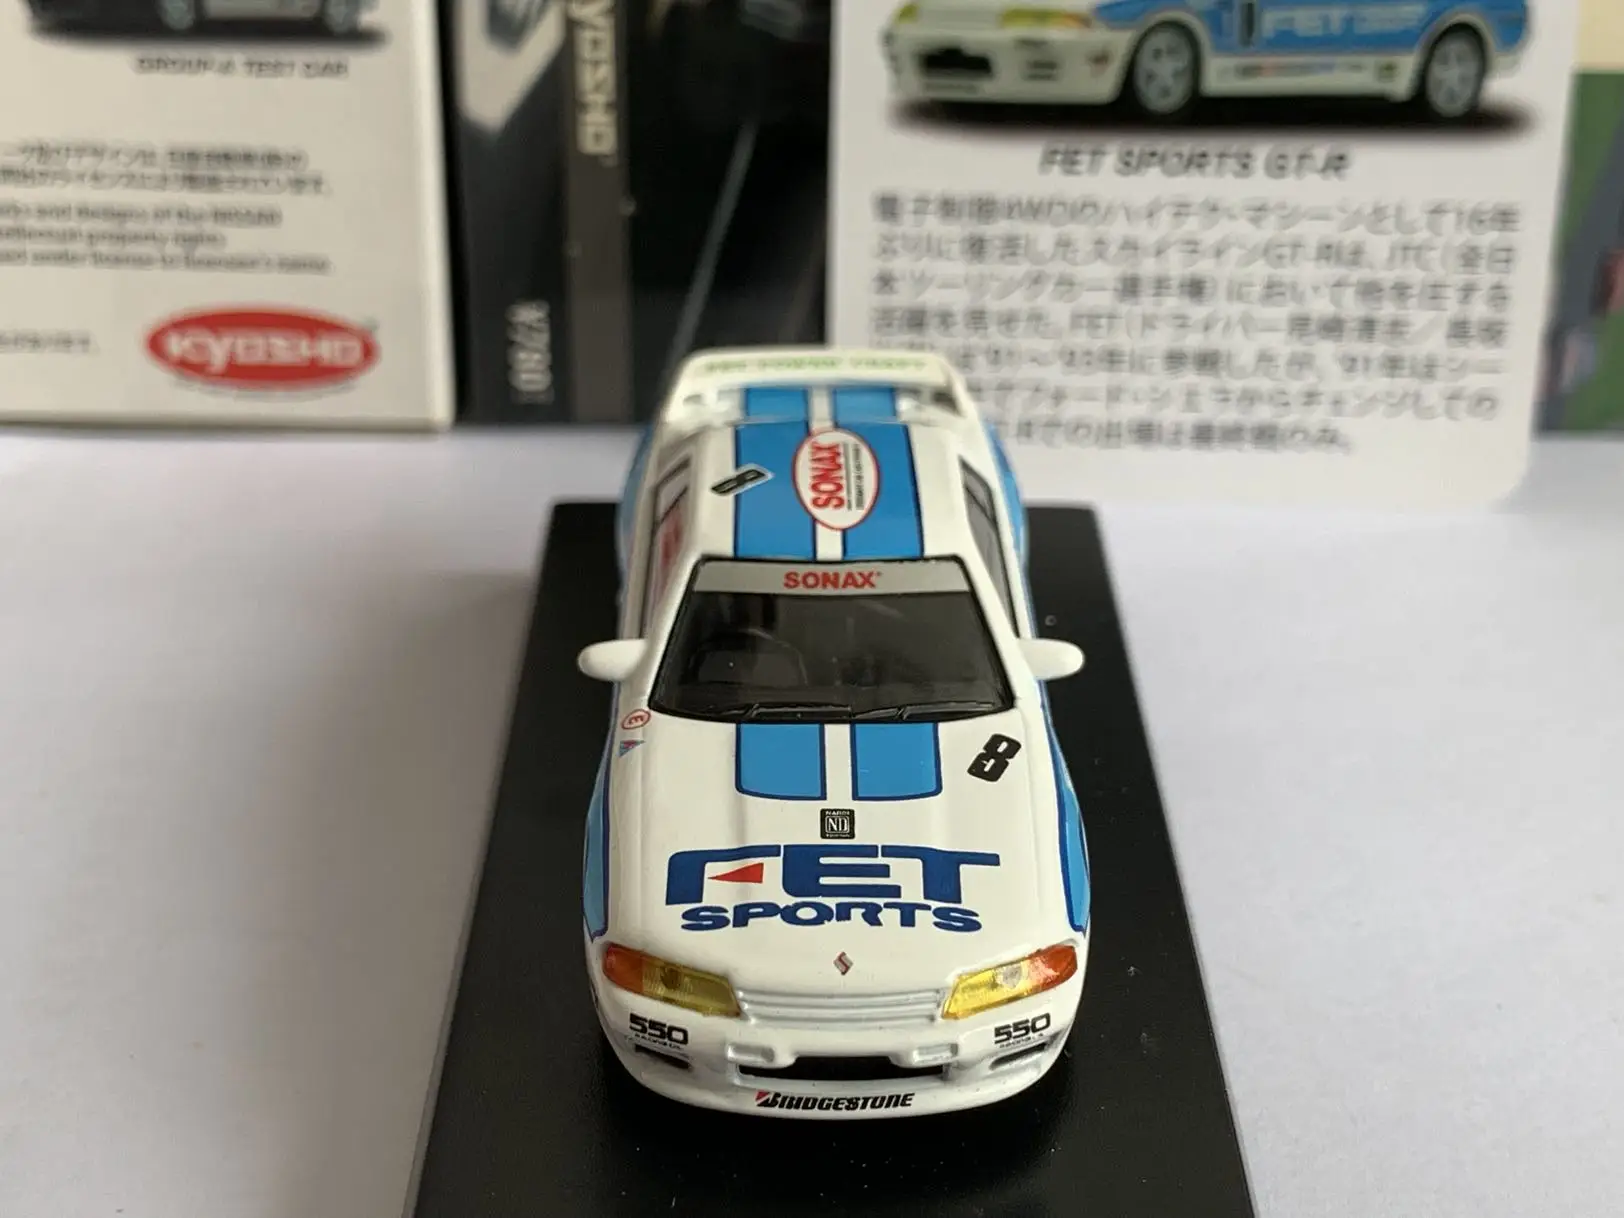 Kyosho 1/64 Nissan FET SPORTS GTR Коллекция детских игрушек для моделирования автомобилей из сплава, изготовленных методом литья под давлением 4